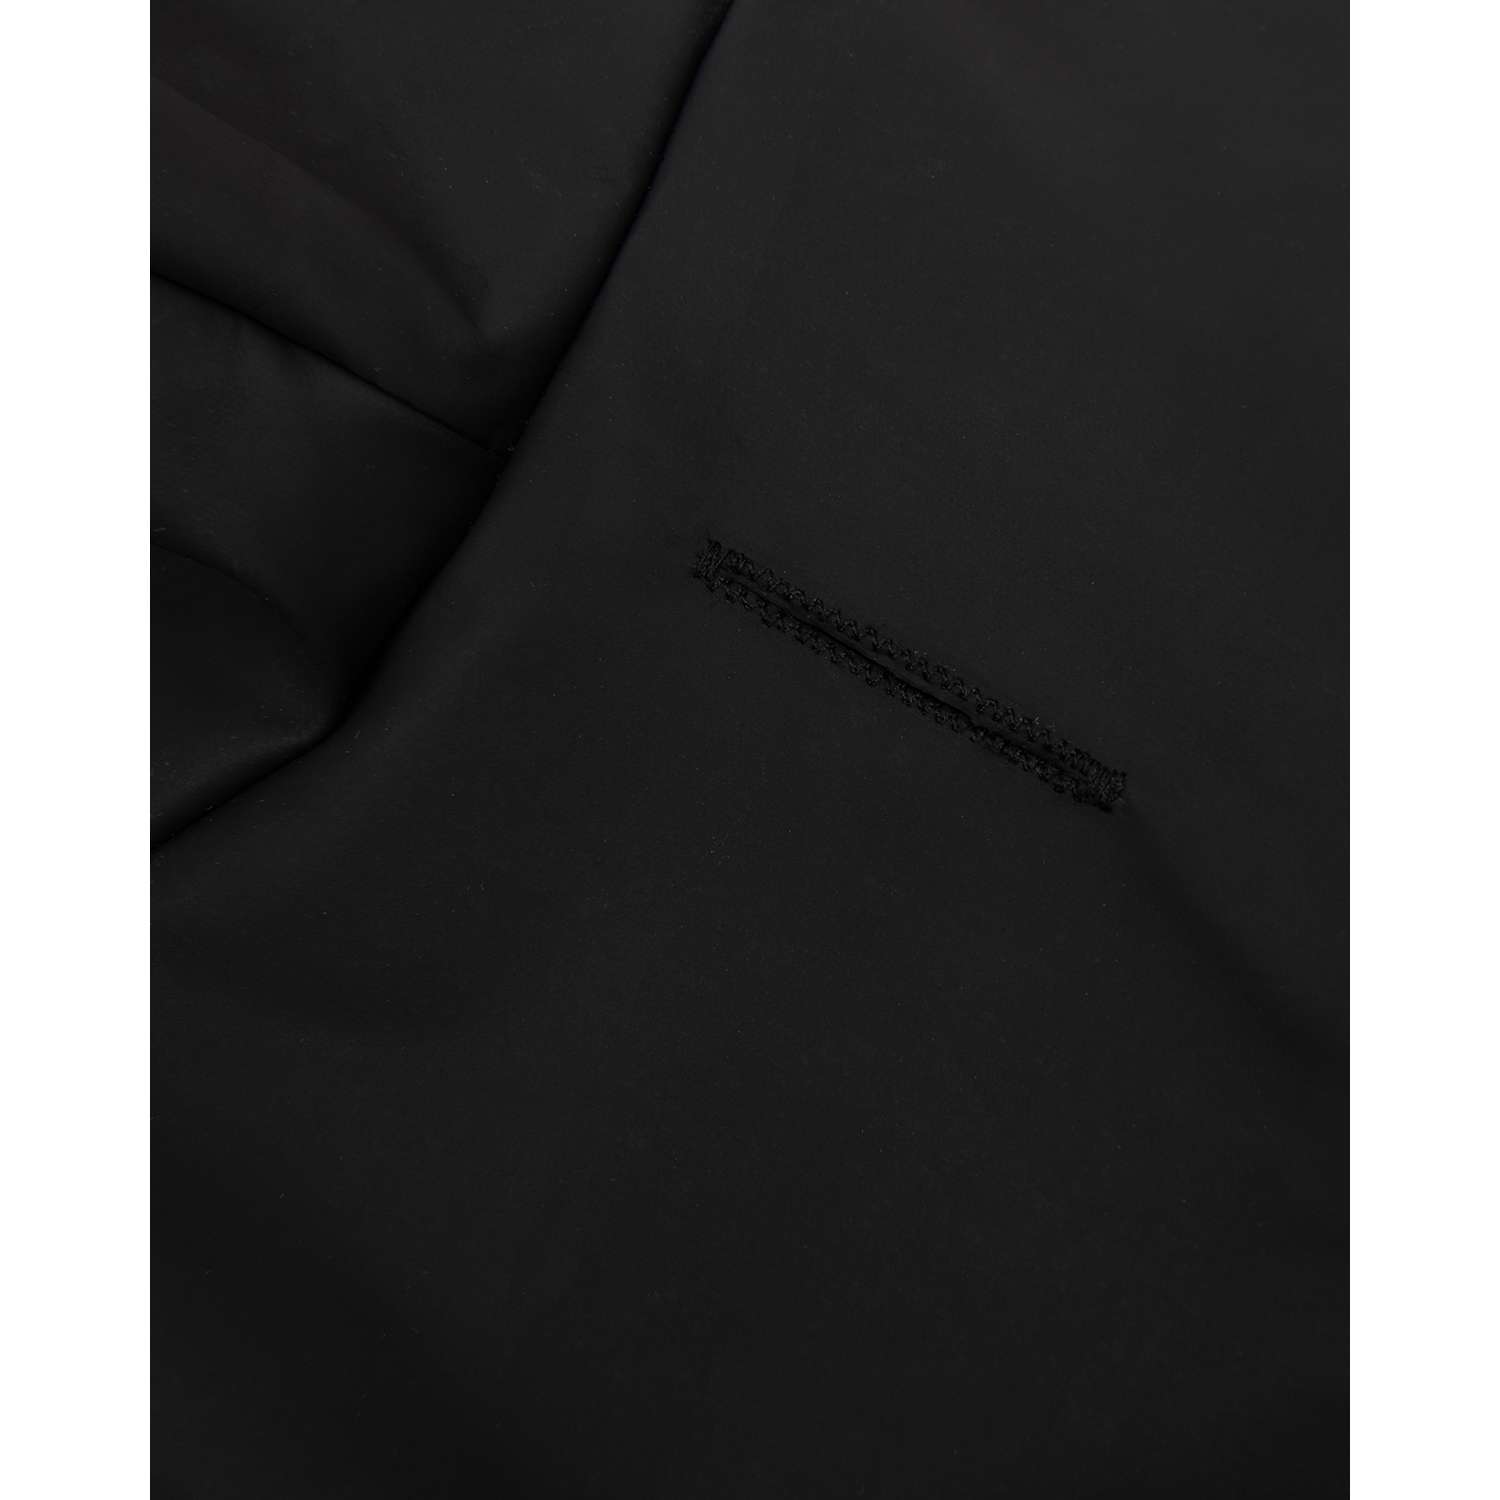 Дождевик-куртка для собак Zoozavr чёрный 40 - фото 5